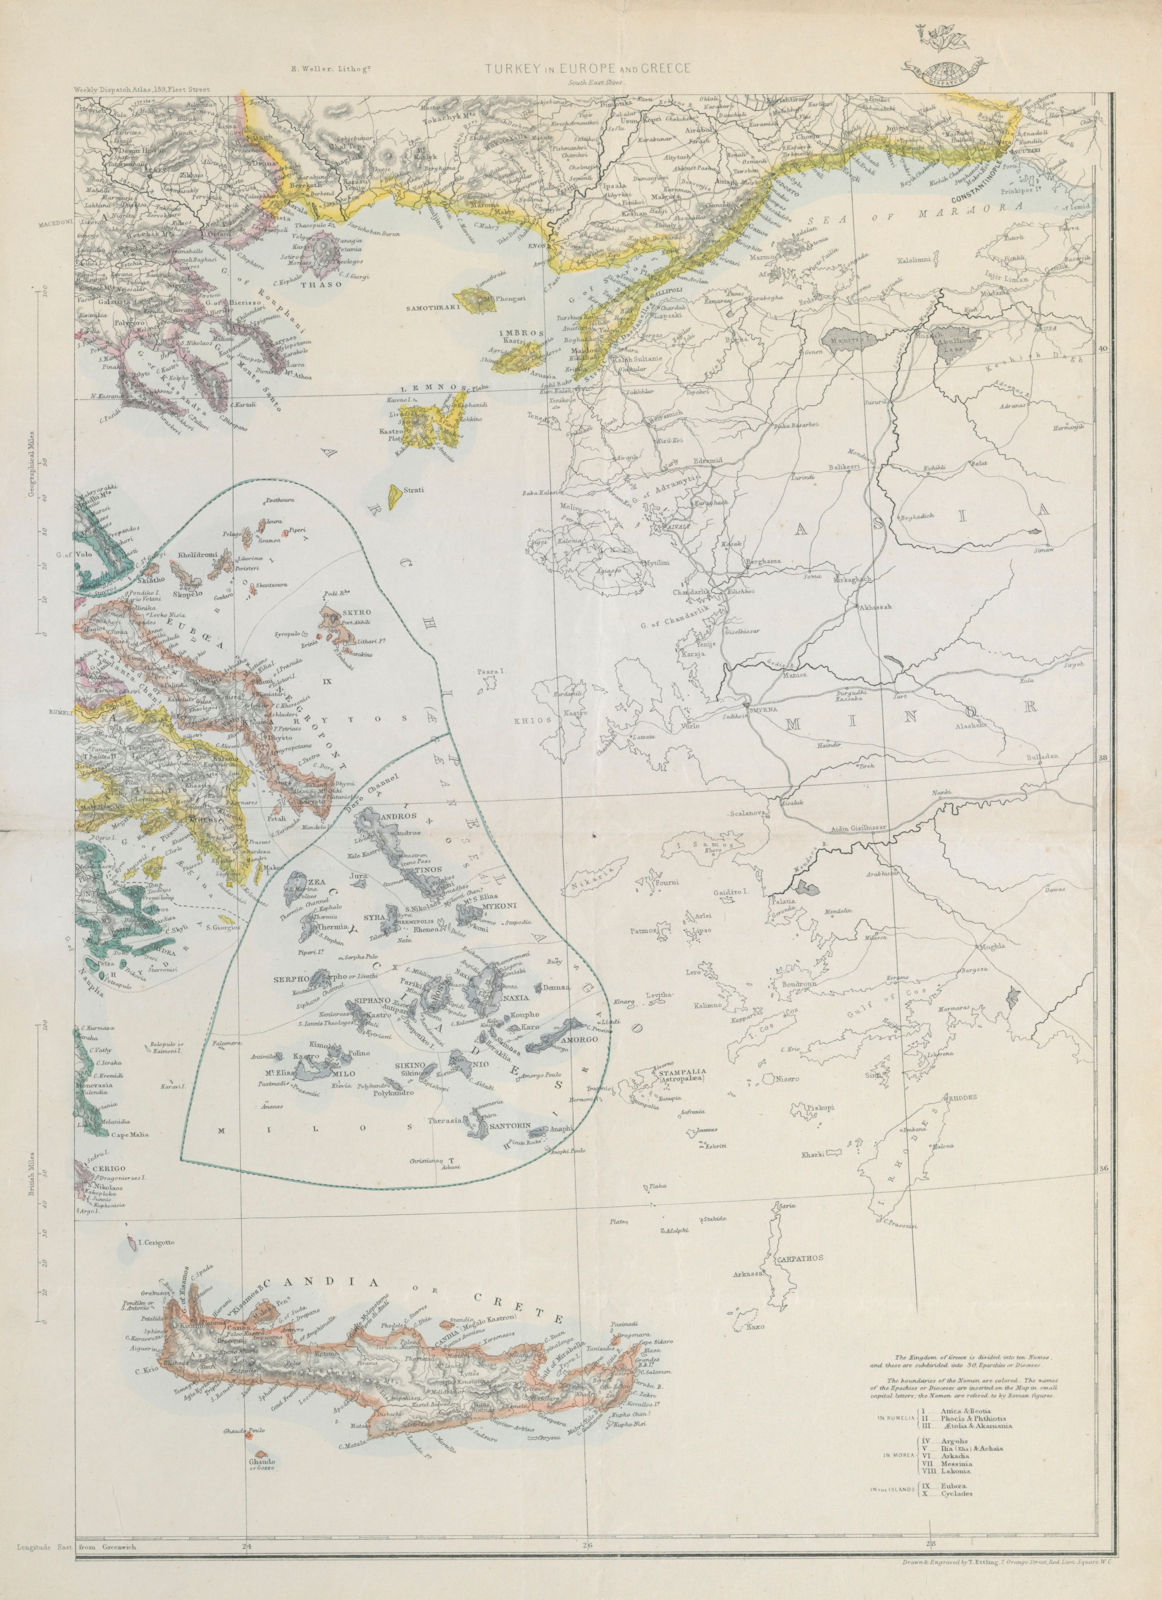 AEGEAN Cyclades Sporades Saronic islands Crete Sea of Marmora. ETTLING c1863 map